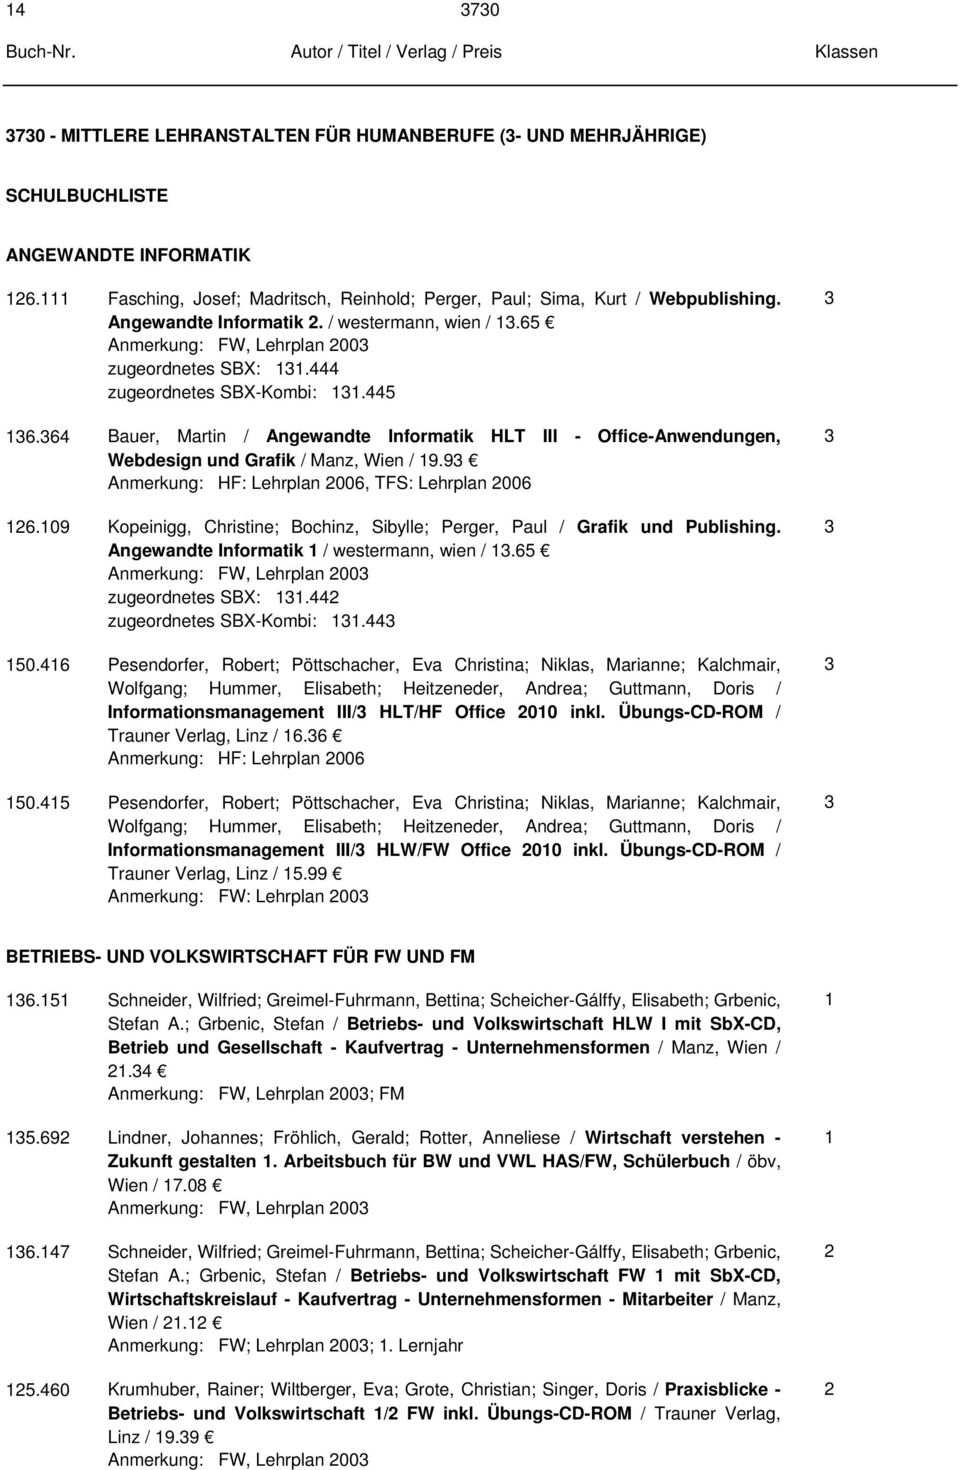 64 Bauer, Martin / Angewandte Informatik HLT III - Office-Anwendungen, Webdesign und Grafik / Manz, Wien / 9.9 Anmerkung: HF: Lehrplan 006, TFS: Lehrplan 006 6.